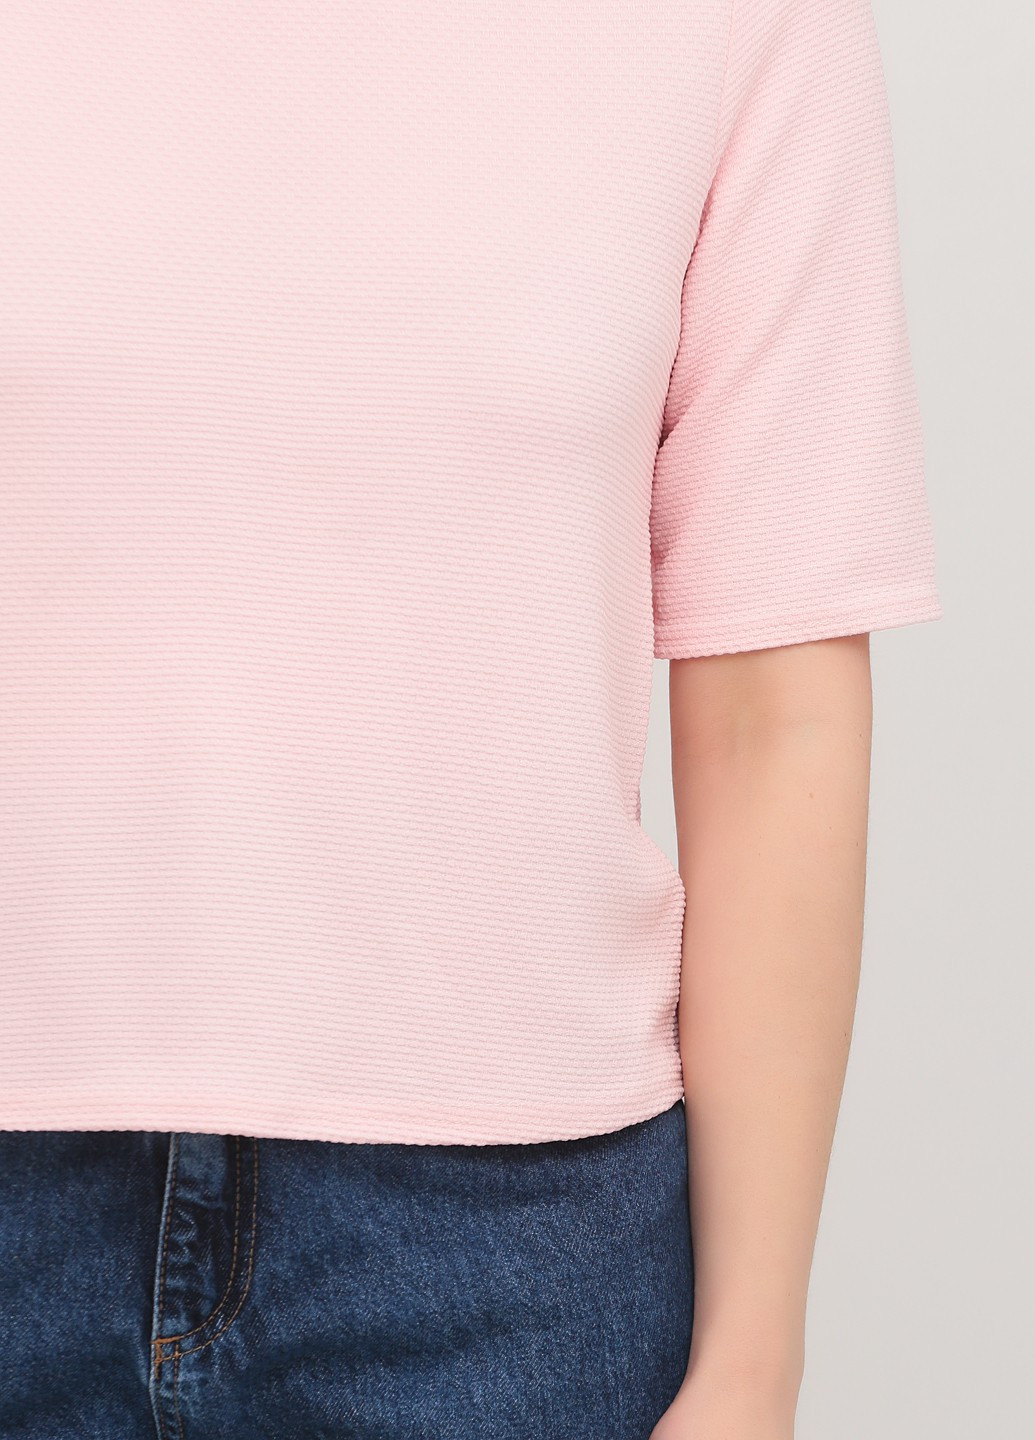 Светло-розовая блуза New Look